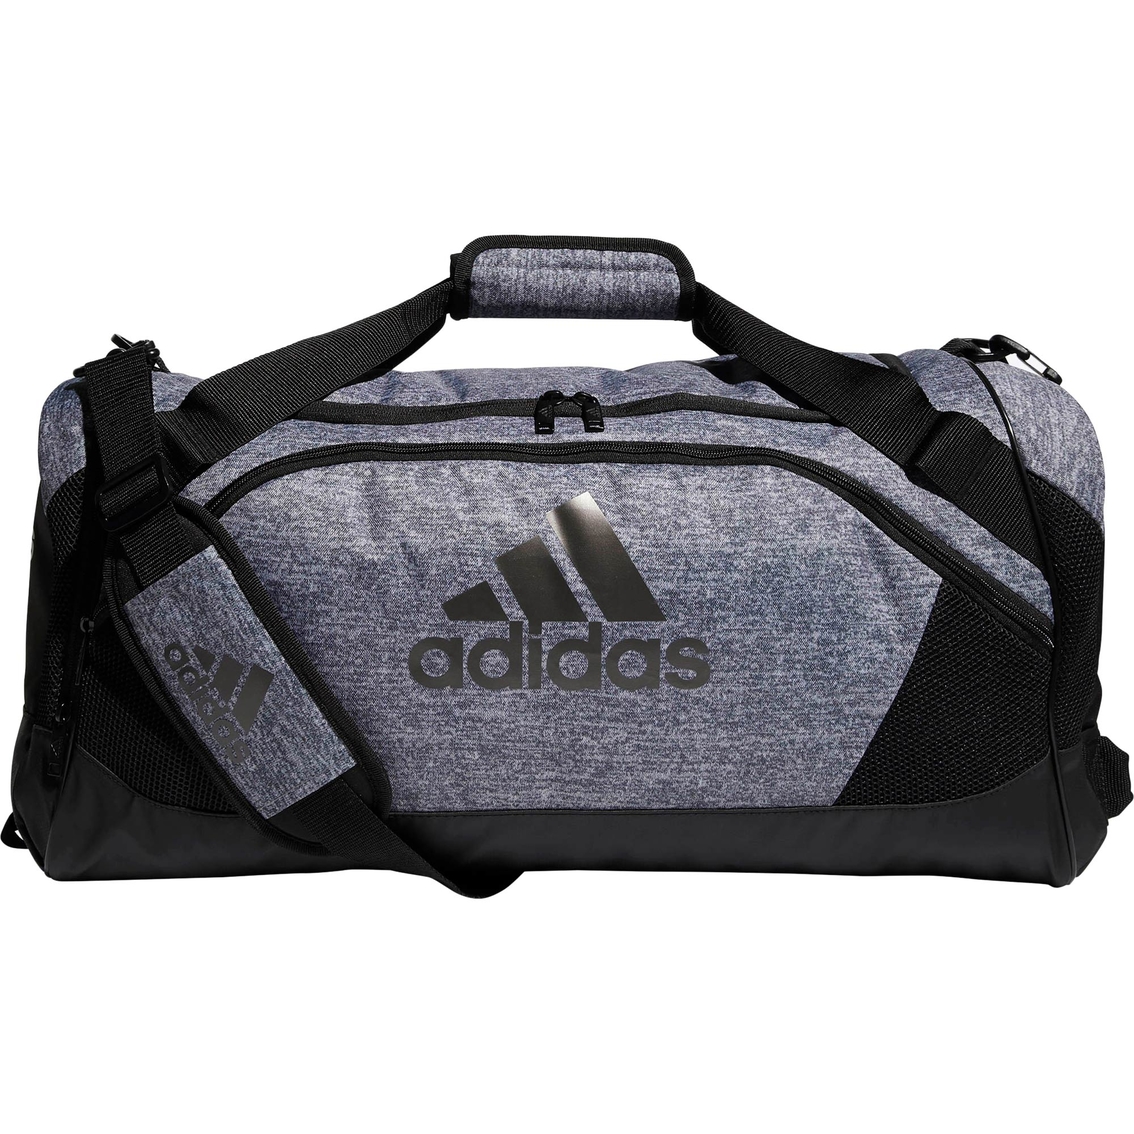 Adidas Team Issue Ii Medium Duffel Bag | Luggage | Clothing ...